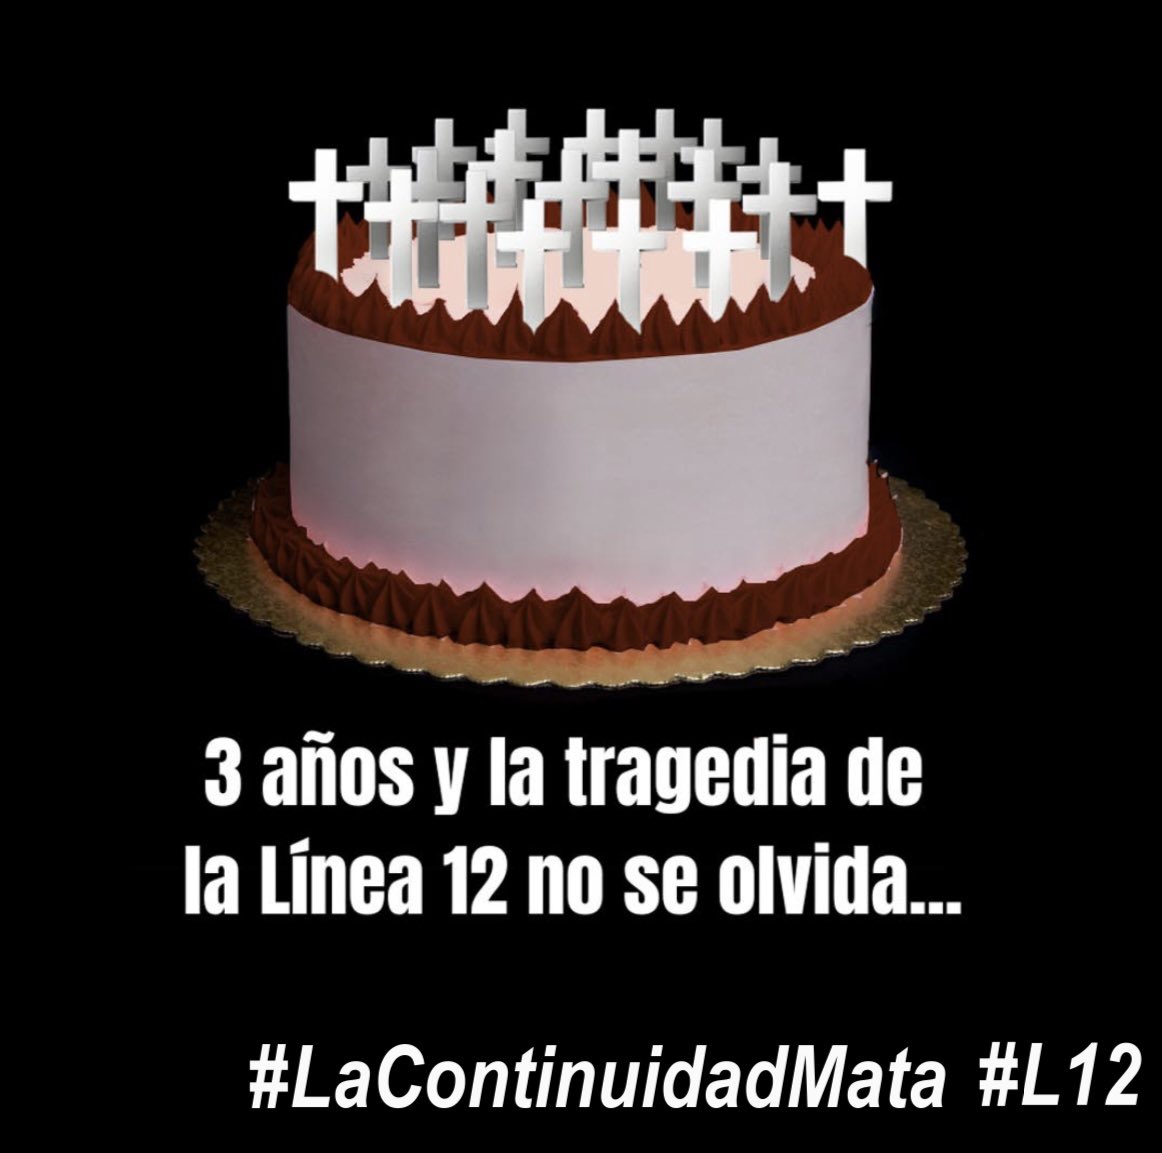 Tren que @Claudiashein pueda venir a apagar las velas de su 3er aniversario de impunidad! Ya pagó 26 vidas si negligencia. ##LaContinuidadMata